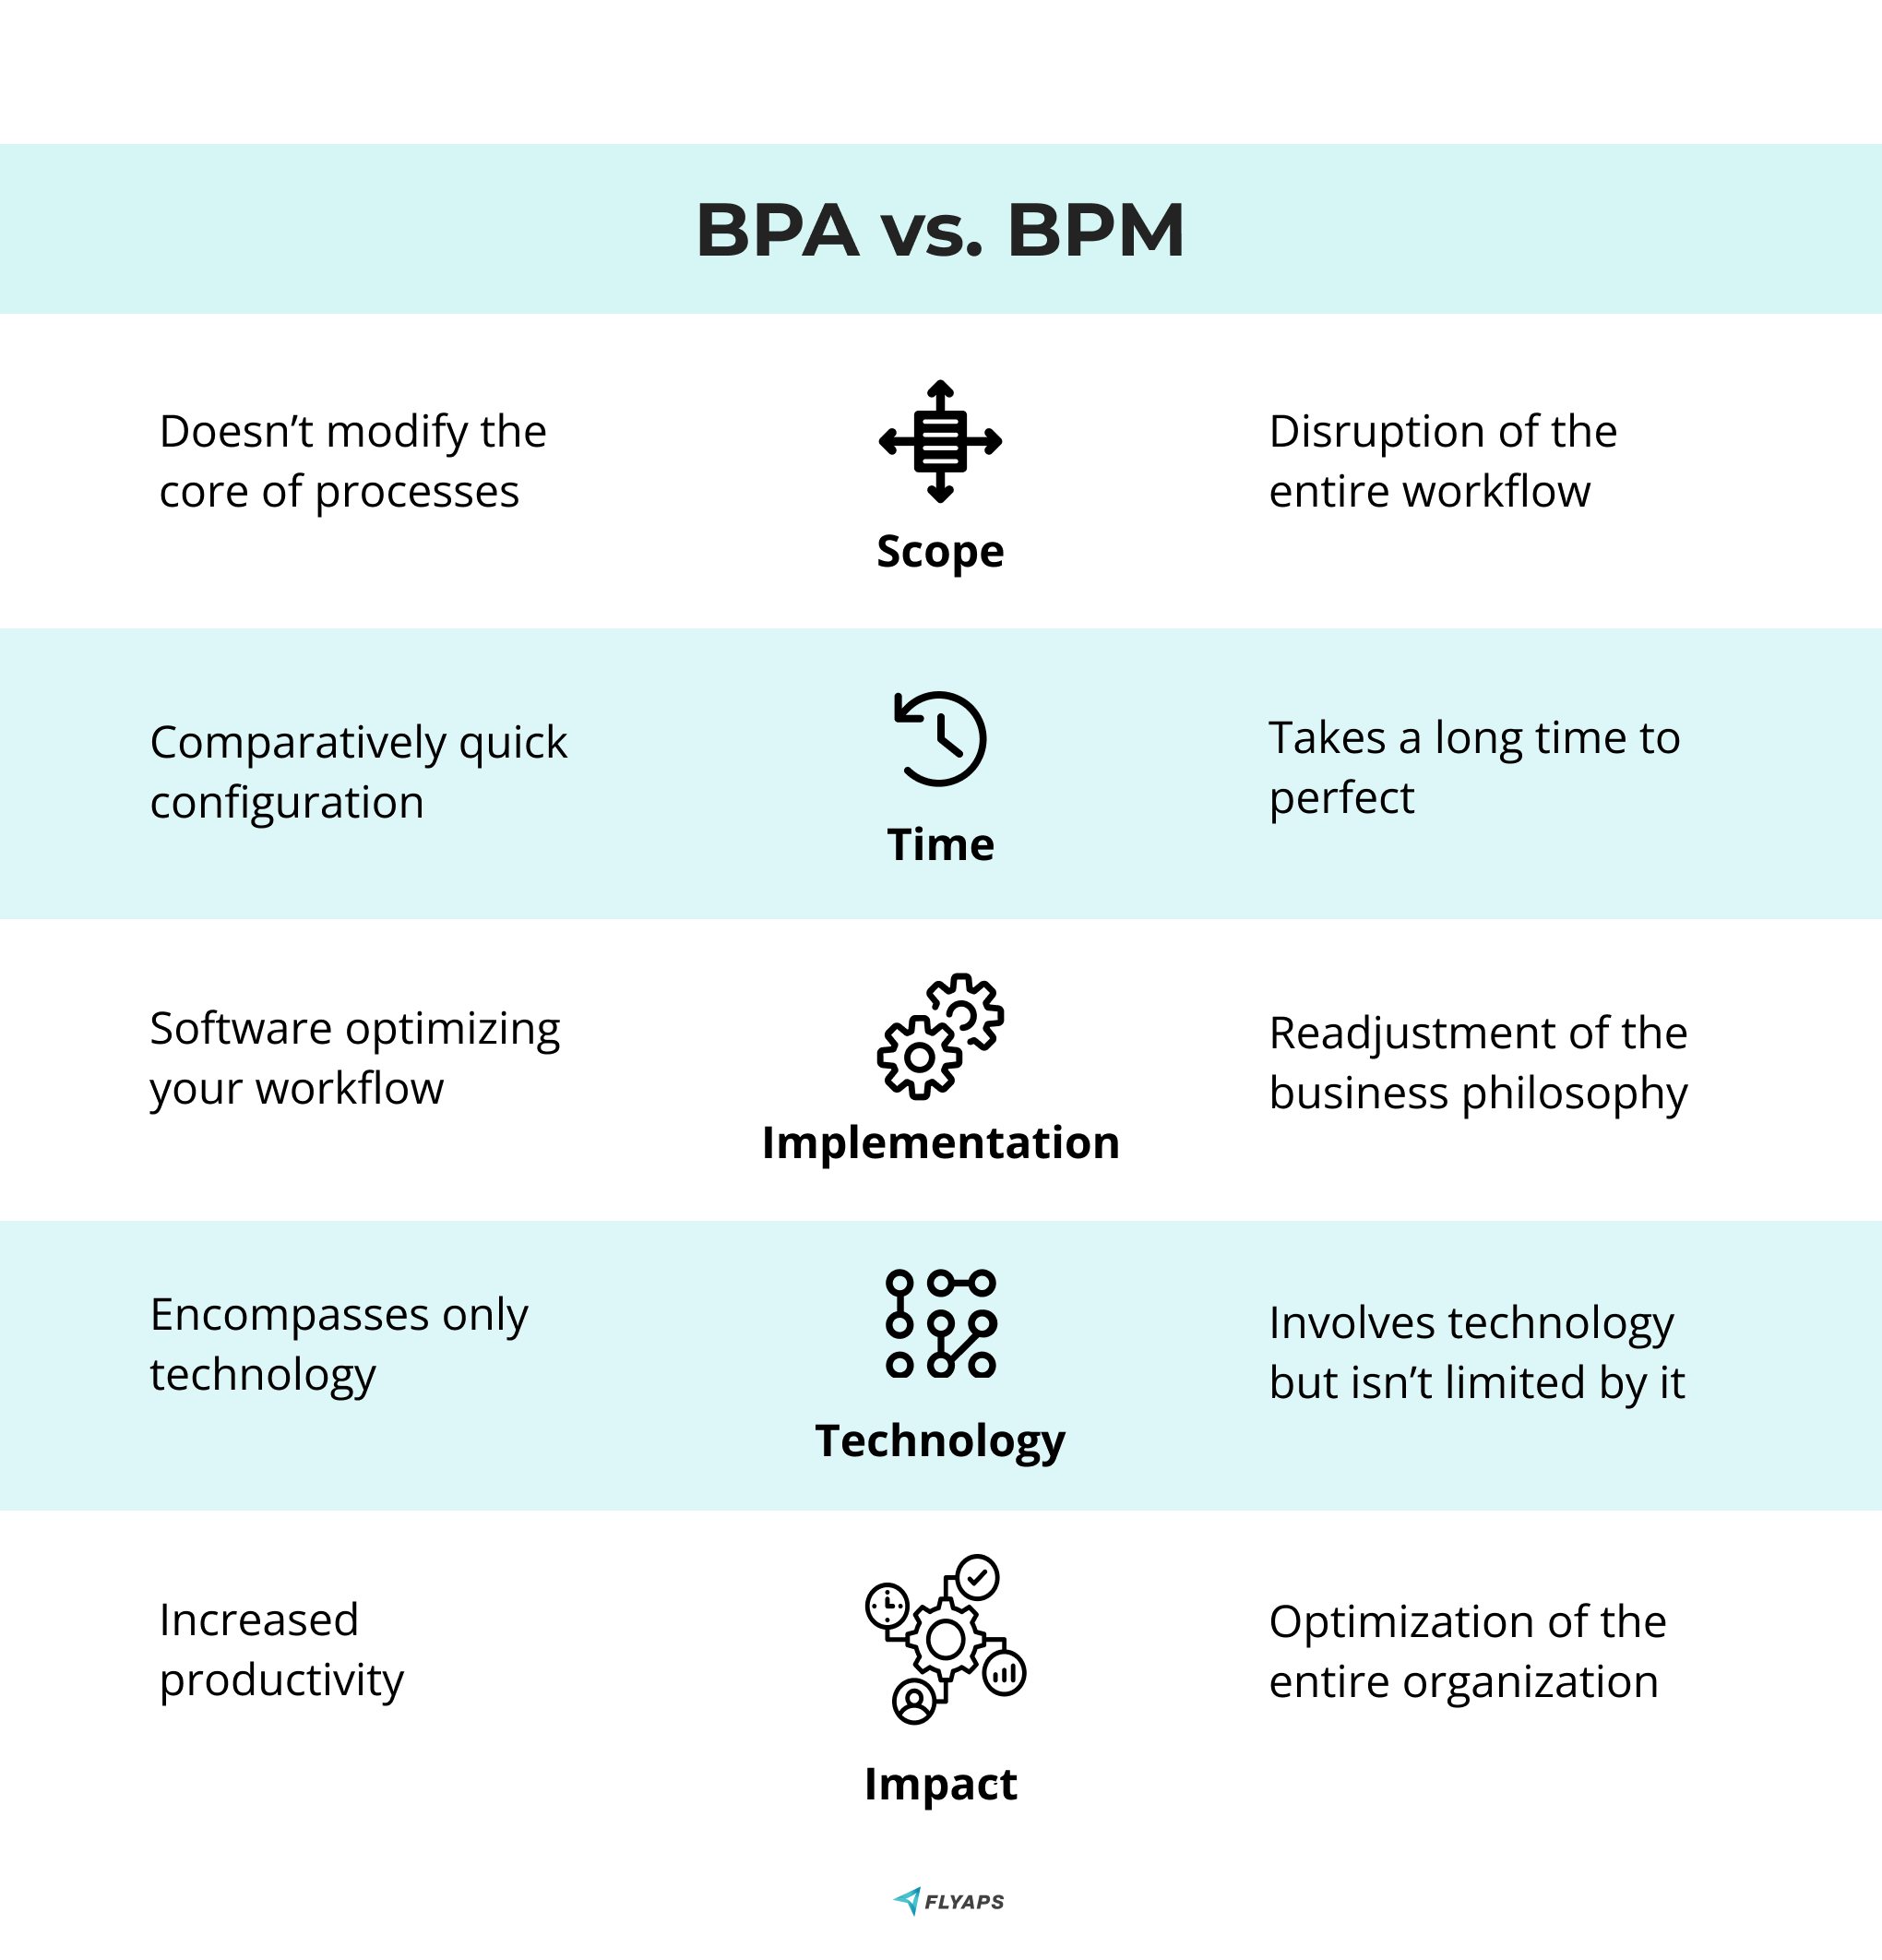 BPA vs. BPM comparison